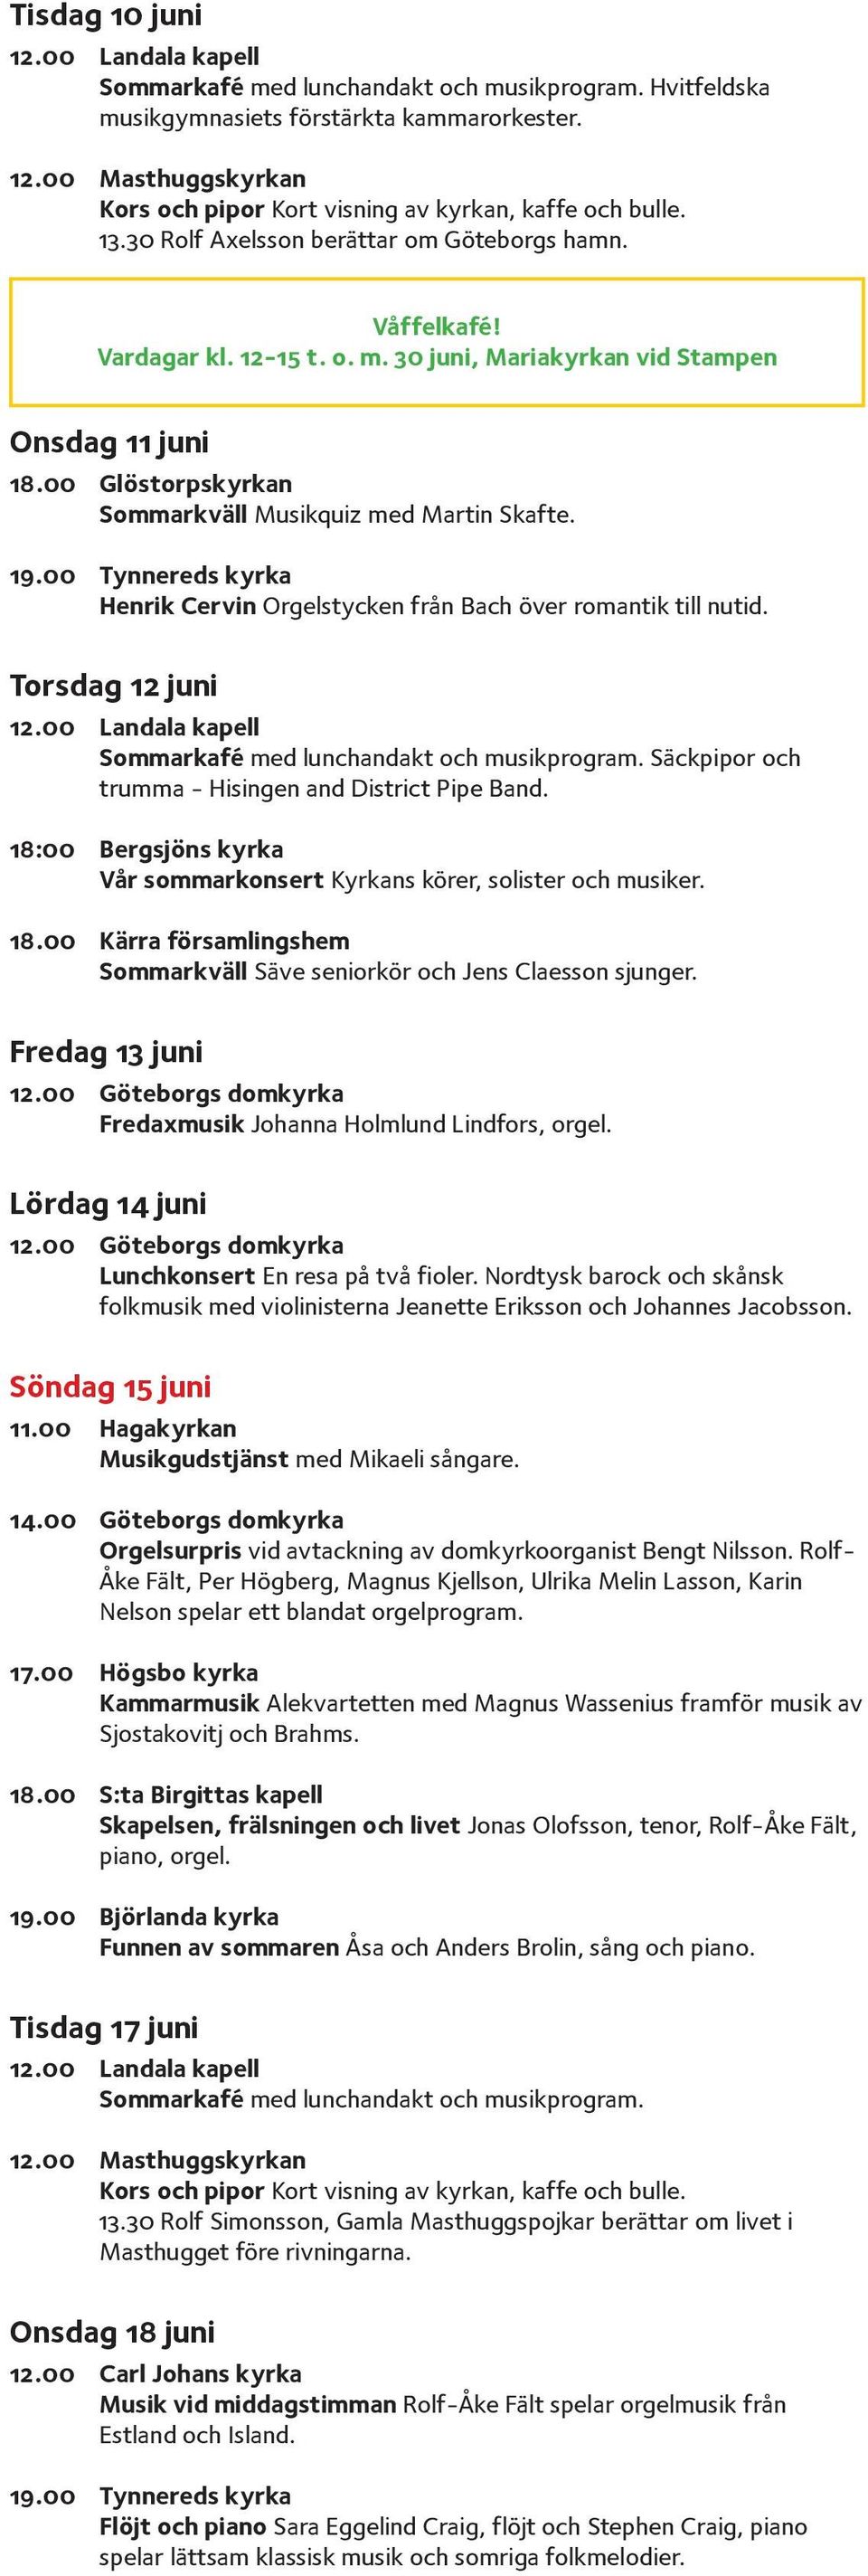 00 Tynnereds kyrka Henrik Cervin Orgelstycken från Bach över romantik till nutid. Torsdag 12 juni 12.00 Landala kapell Sommarkafé med lunchandakt och musikprogram.